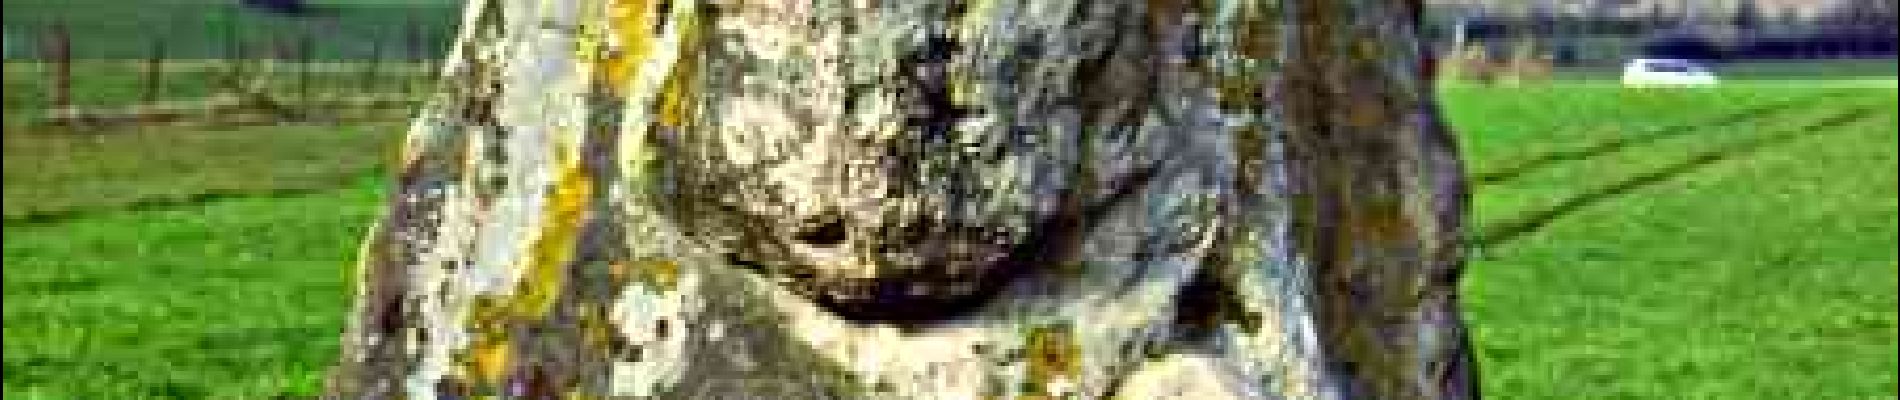 Point d'intérêt Chimay - La pierre qui tourne - Photo